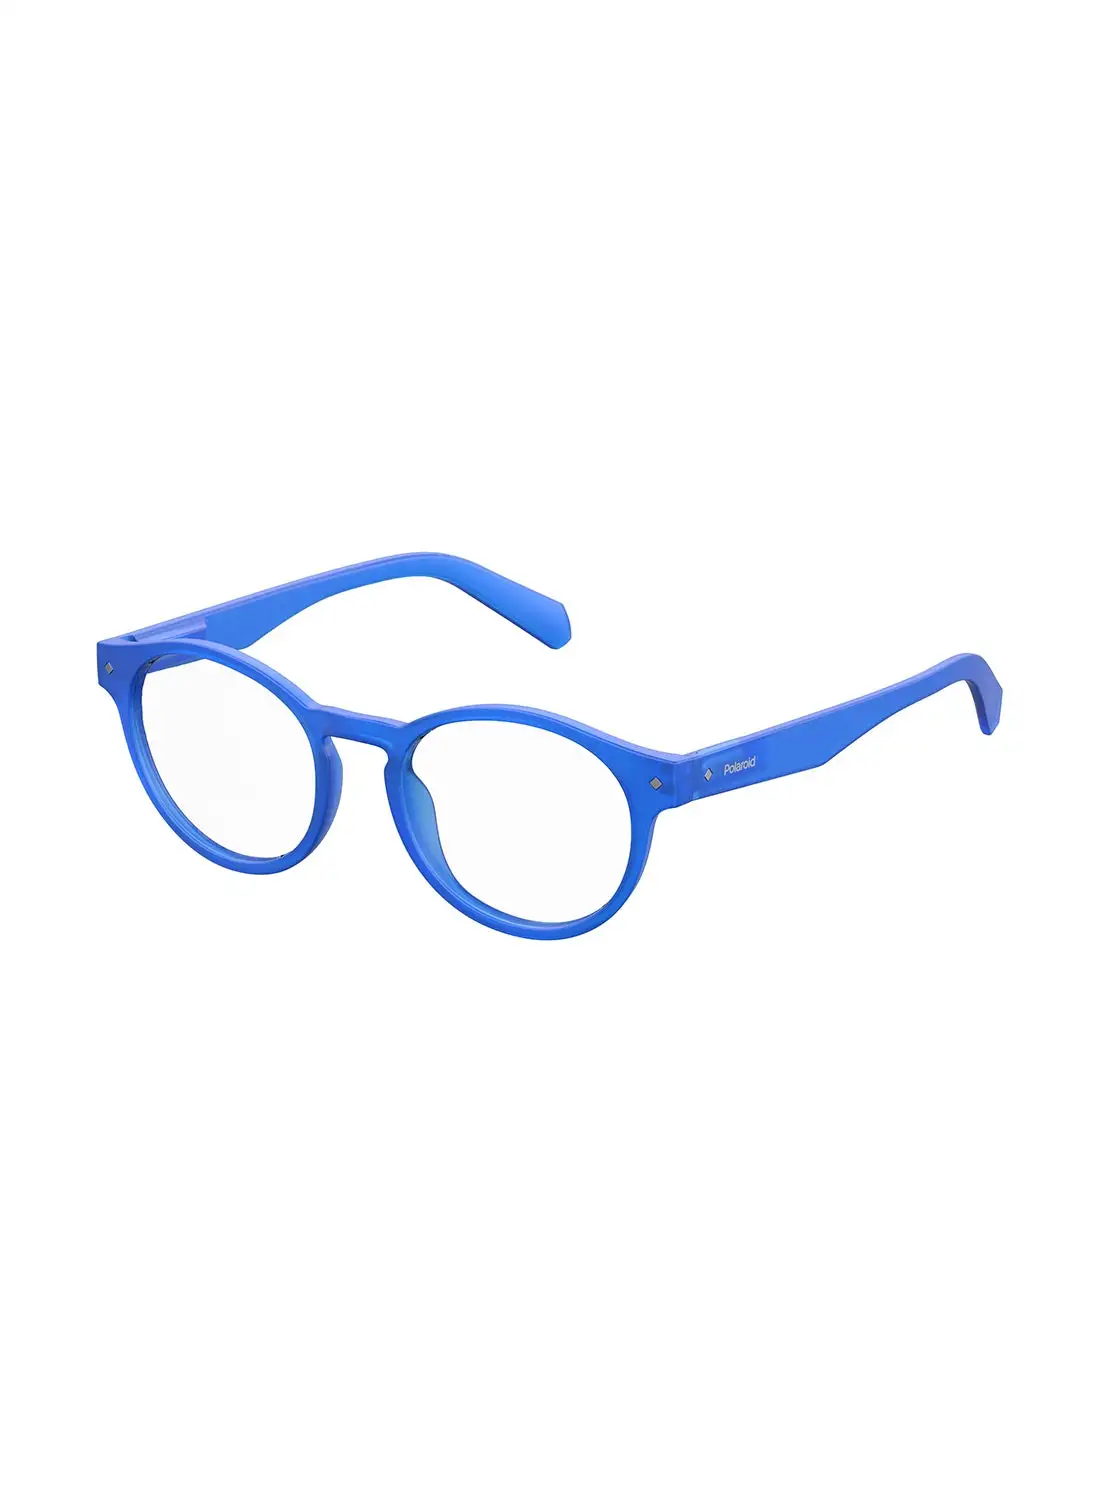 Polaroid Unisex Oval Reading Glasses - Pld 0021/R Blue 49 - Lens Size: 49 Mm